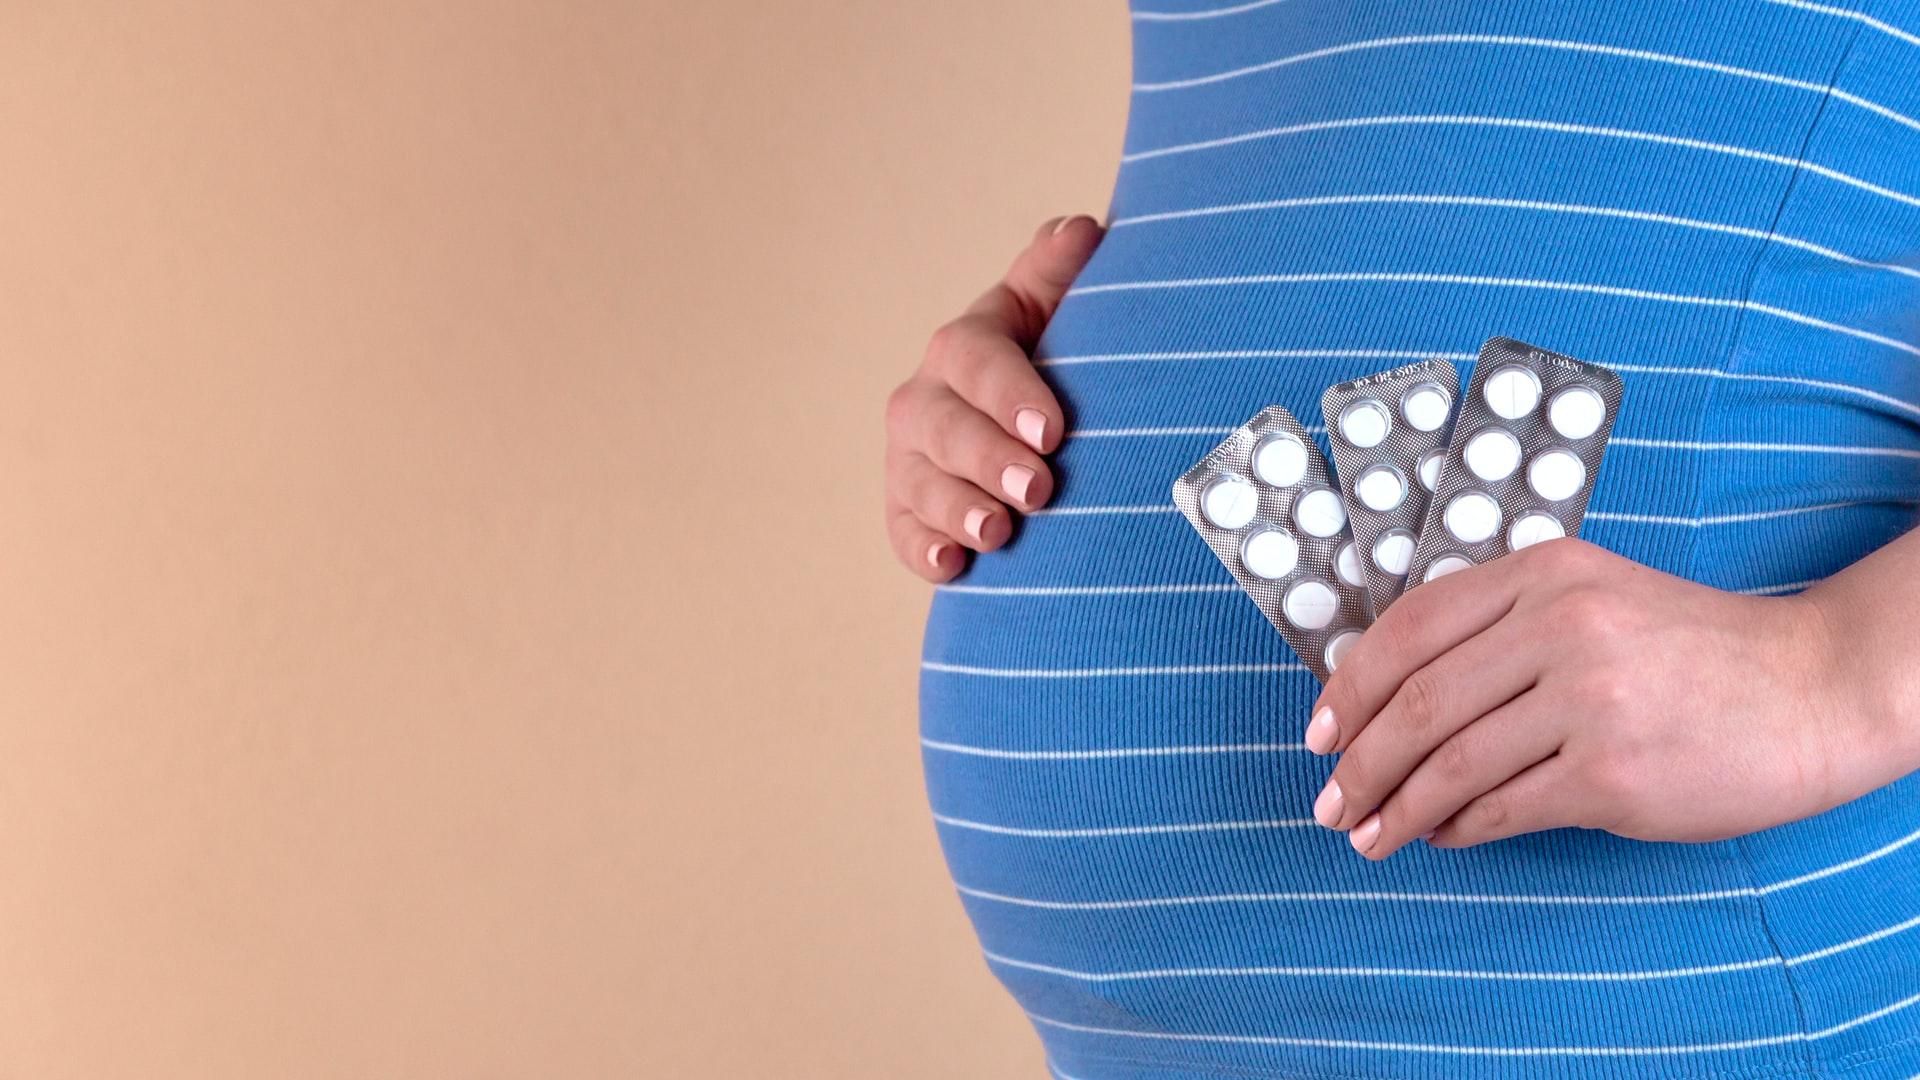 Низький рівень йоду під час вагітності небезпечний для інтелектуального розвитку плоду
